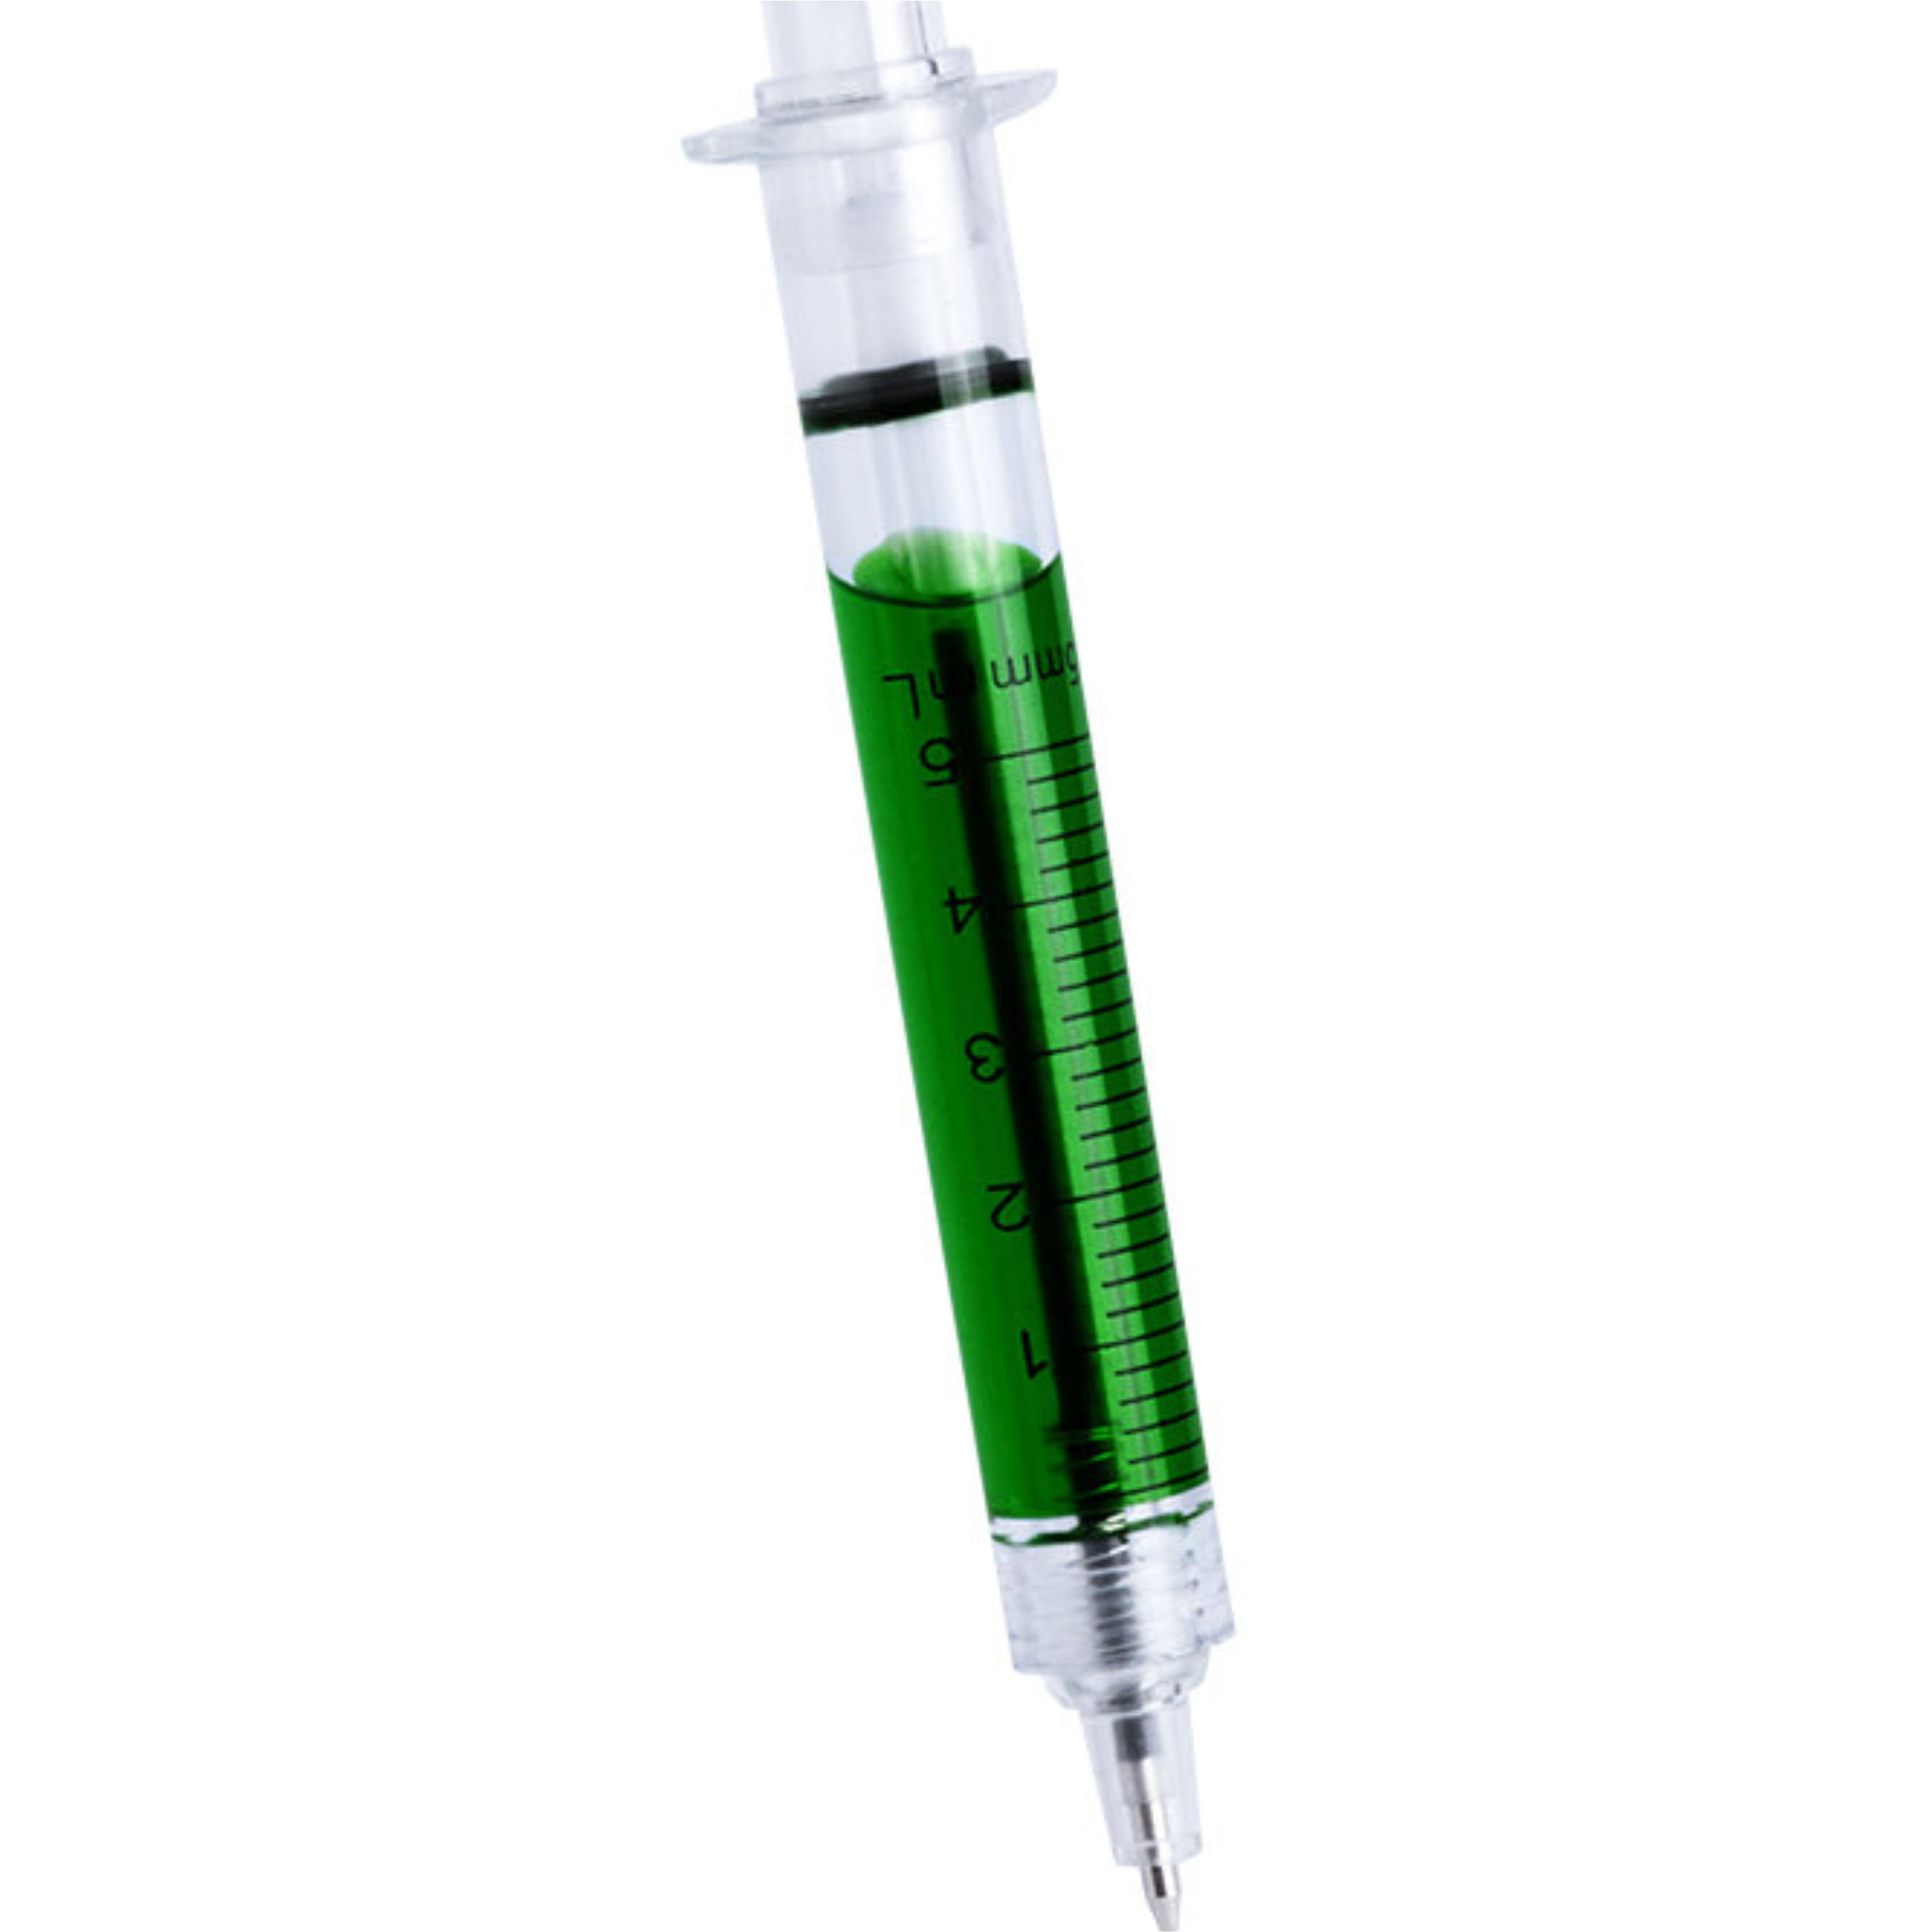 ручка в виде шприца с жидкостью